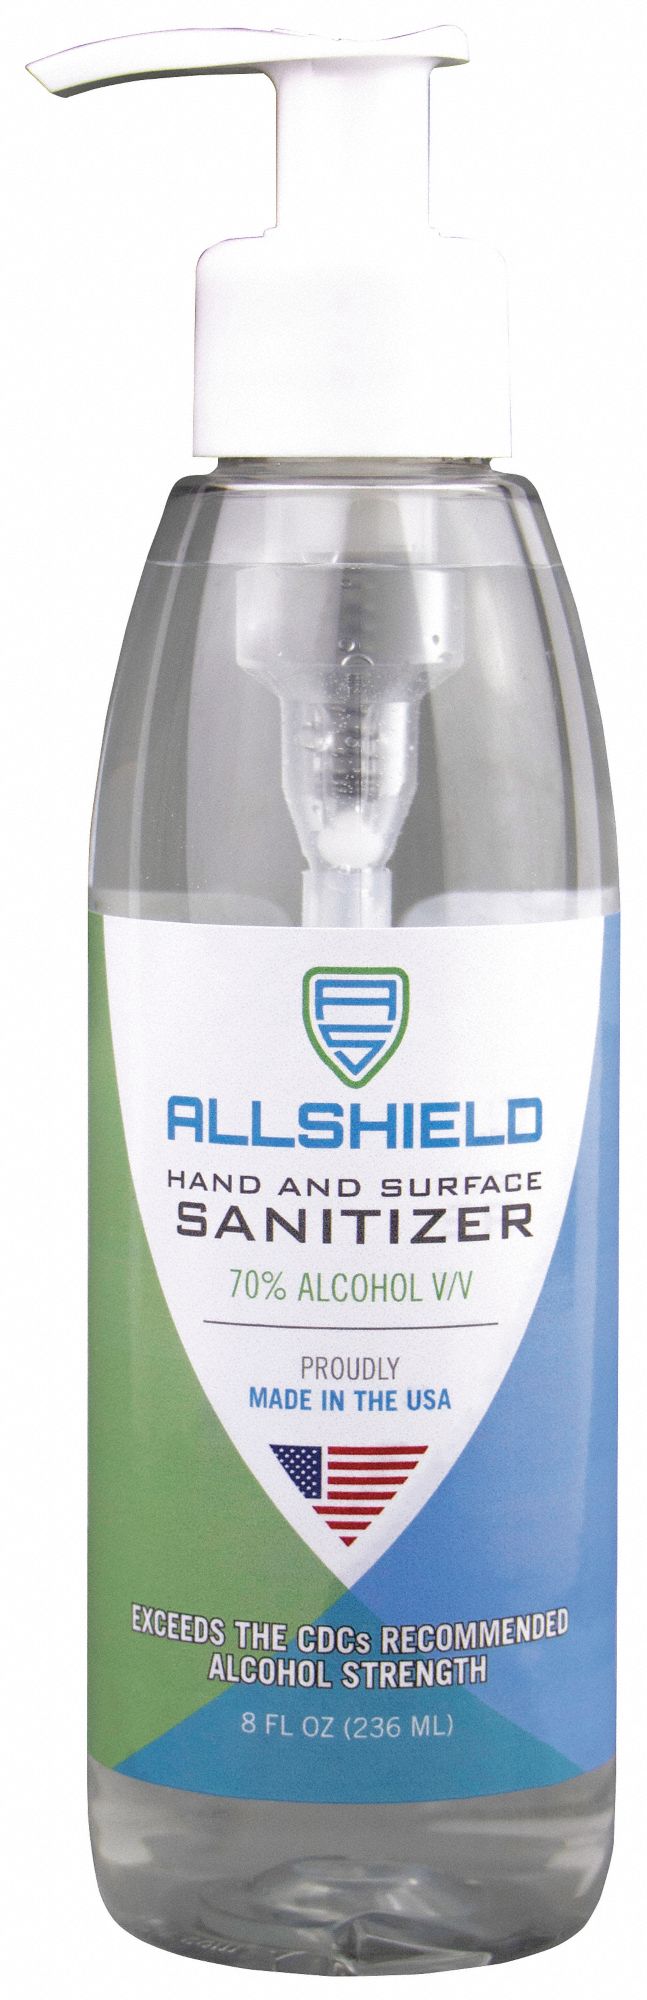 Hand Sanitizer: Pump Bottle, Gel, 16 oz Size, Unscented, Sanitizing